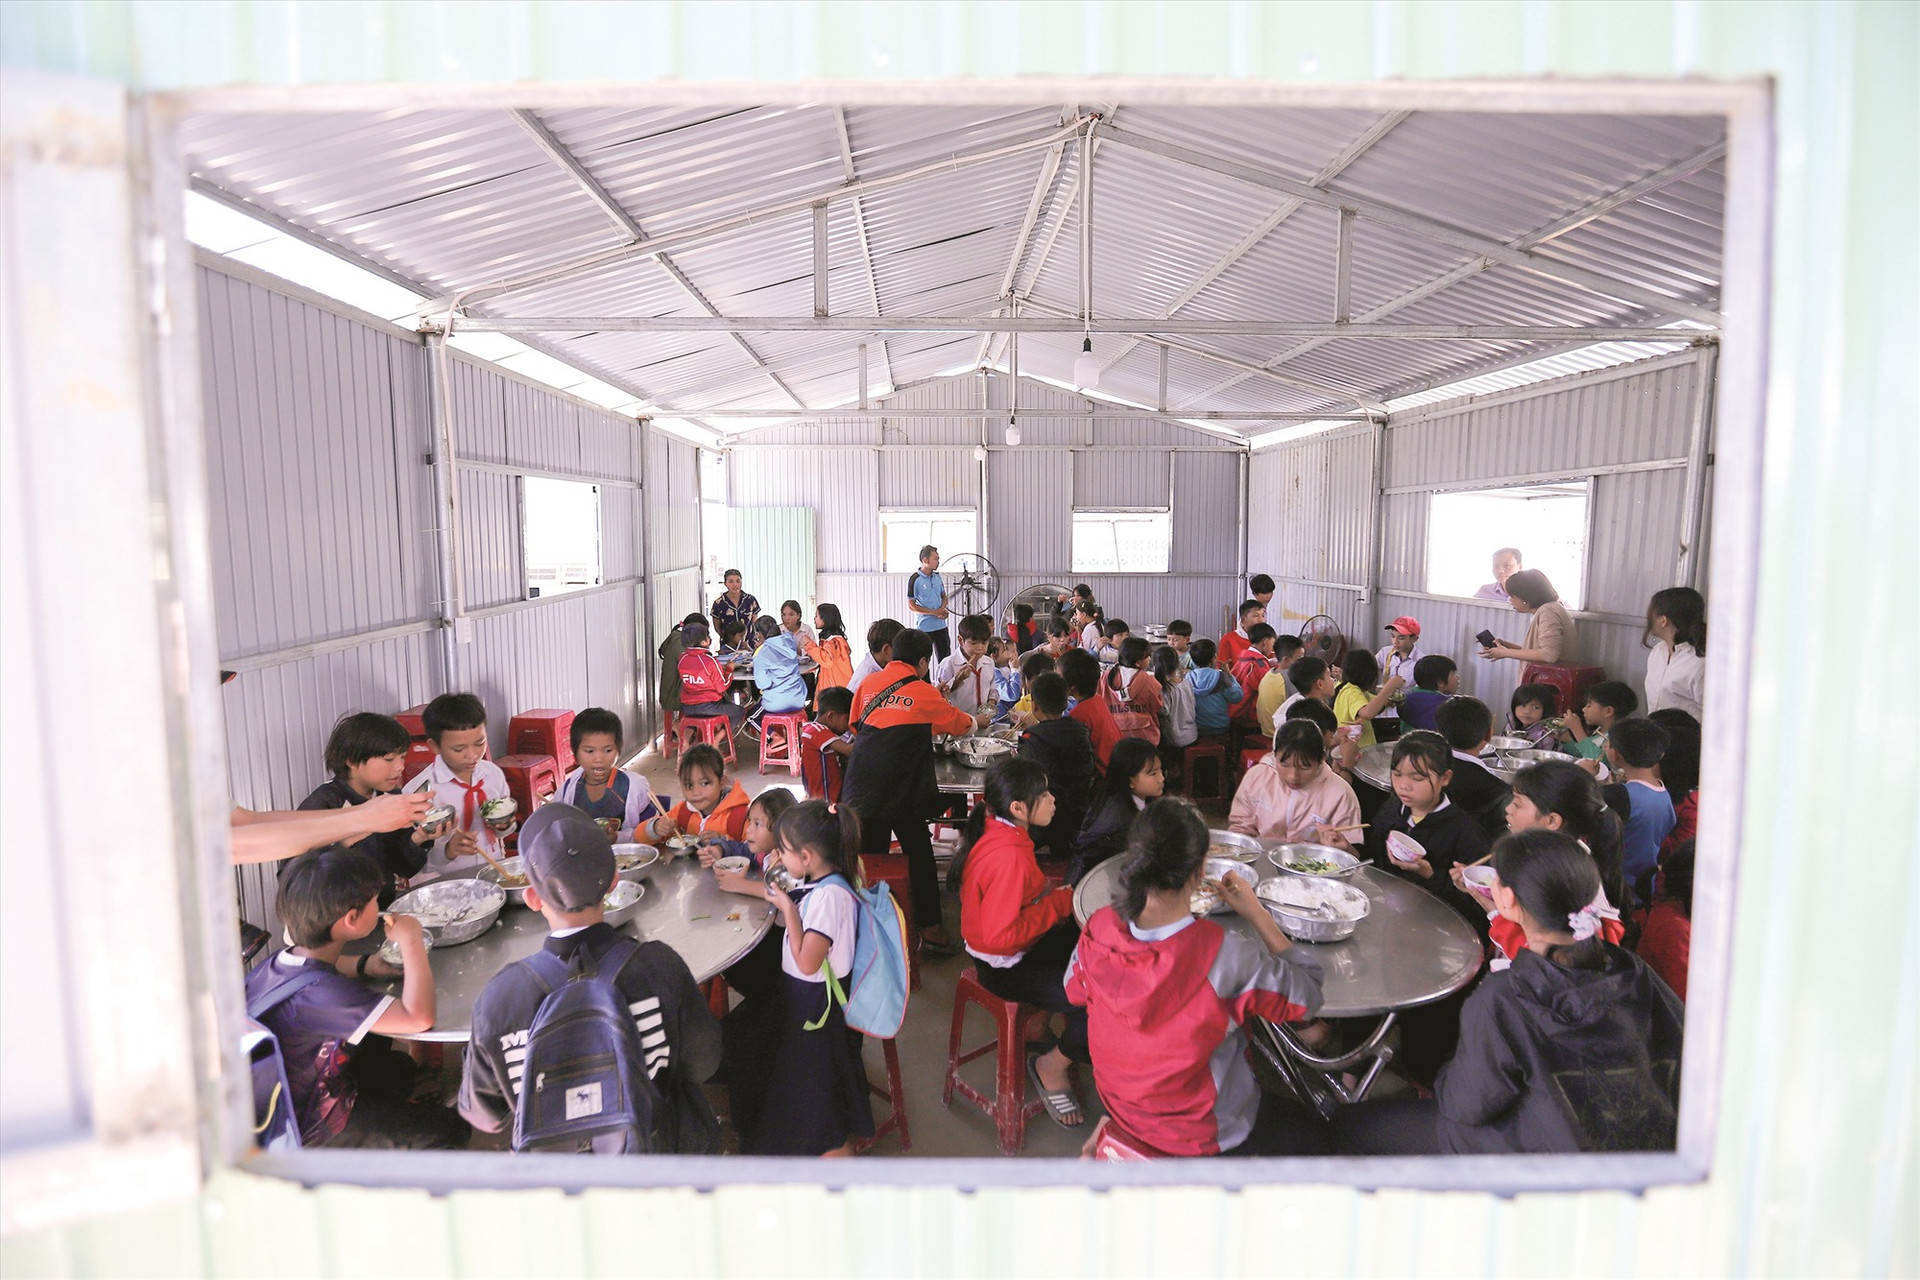 Bữa cơm của học sinh Trường Phổ thông dân tộc bán trú tiểu học và THCS Phước Kim trong căn nhà mái tôn vừa được dựng tạm, vì nhà ăn tập thể đã bị con suối phía sau trường phá sập một góc, nứt toác tường và nền.